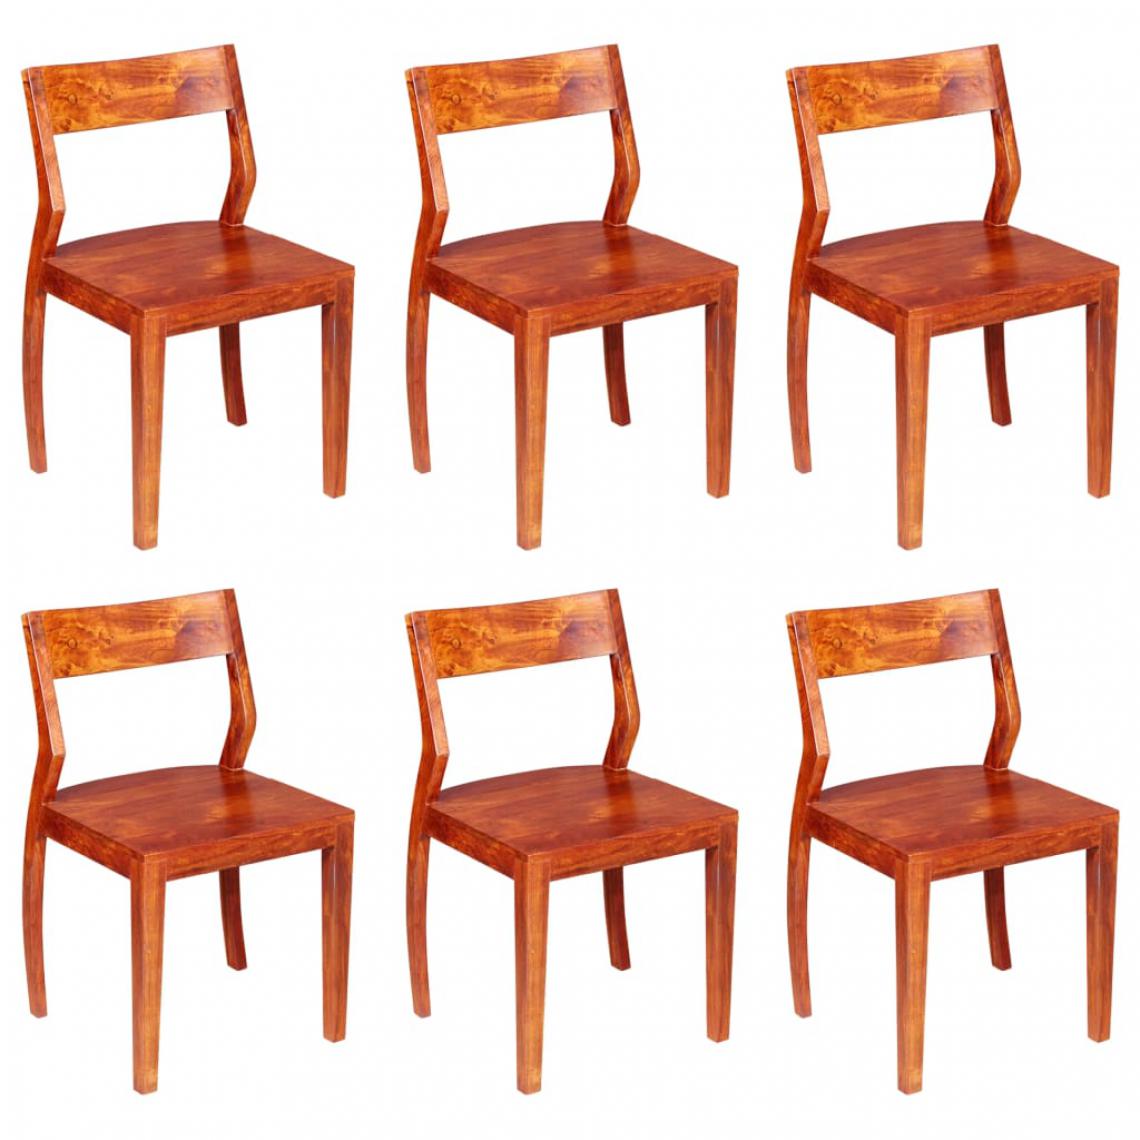 Icaverne - Esthetique Fauteuils et chaises edition Katmandou Chaises de salle à manger 6 pcs Bois d'acacia massif et Sesham - Chaises